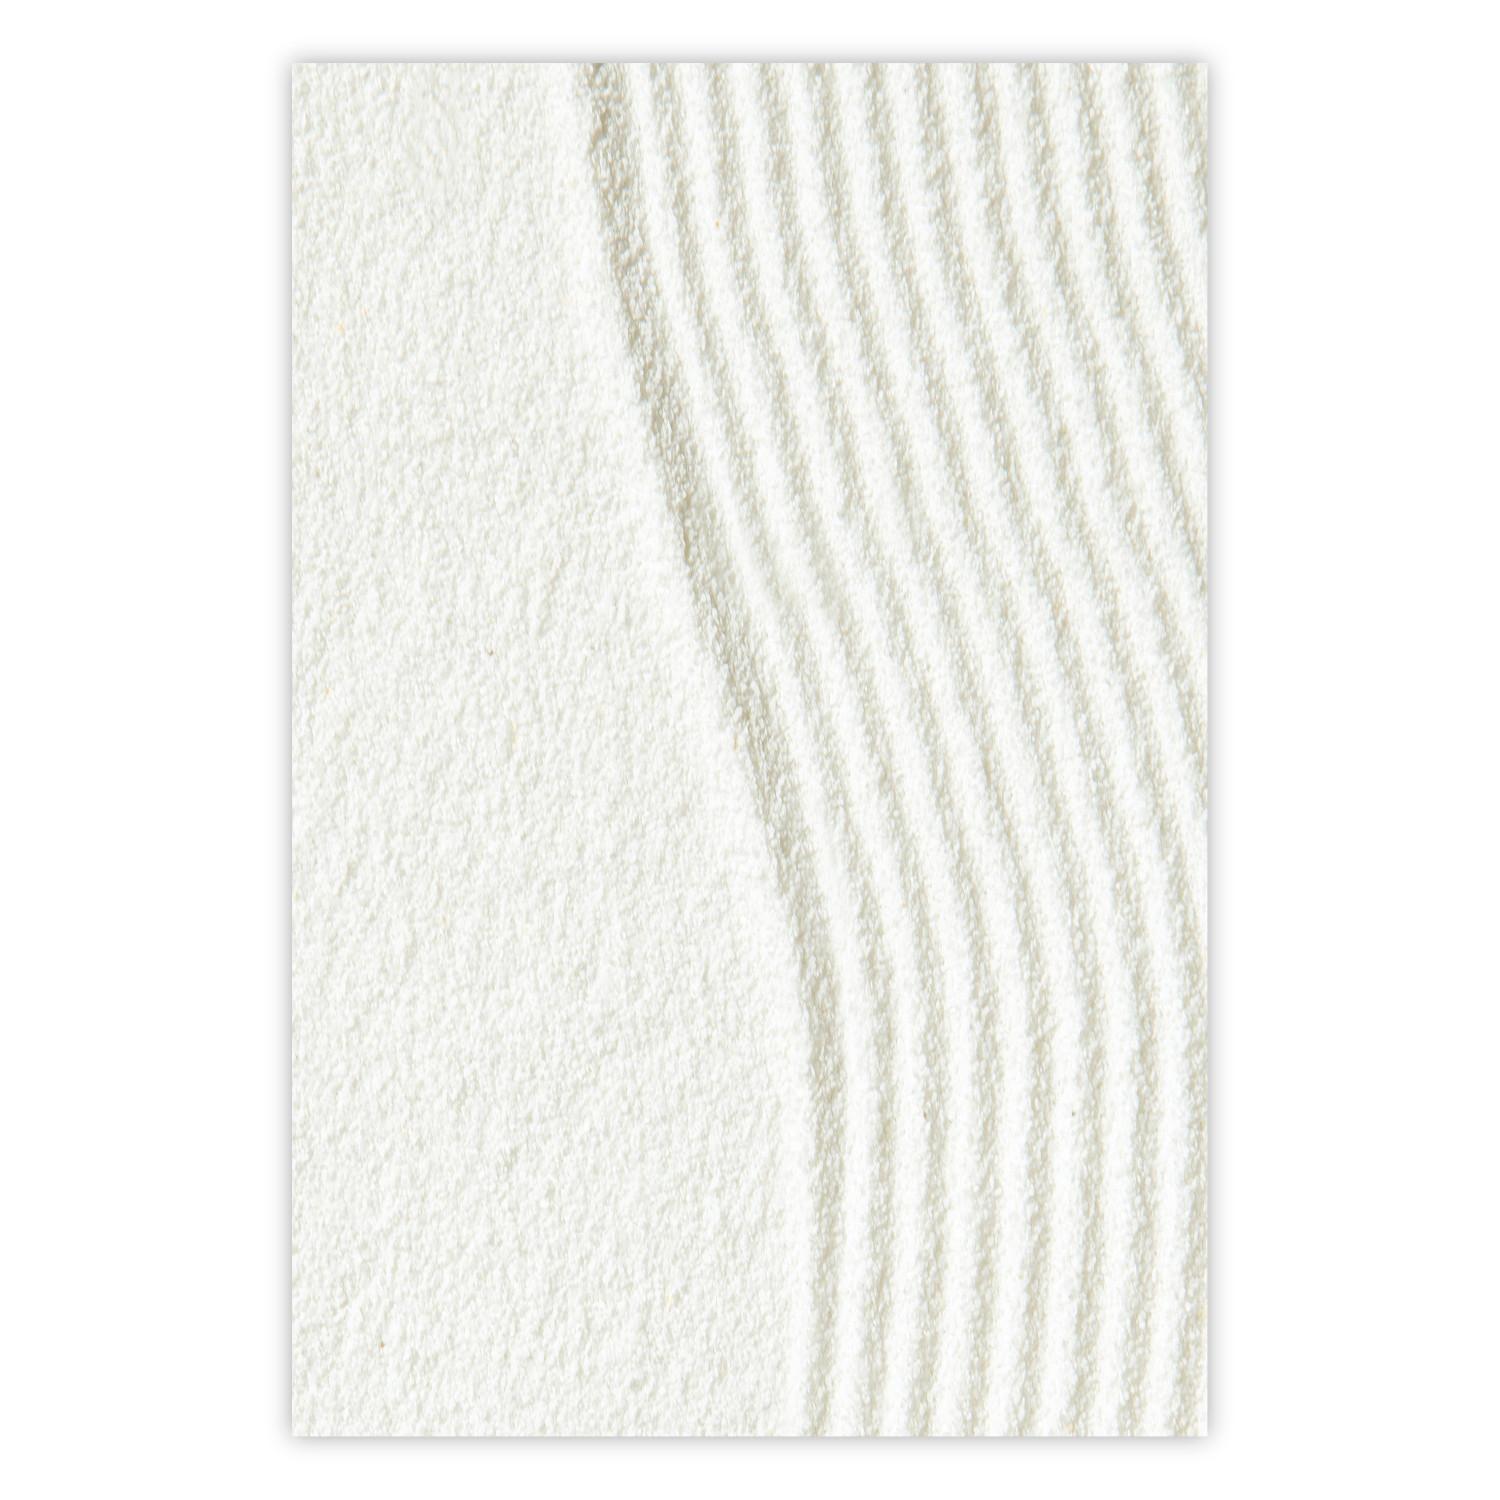 Cartel Armonía en la naturaleza - composición en arena blanca